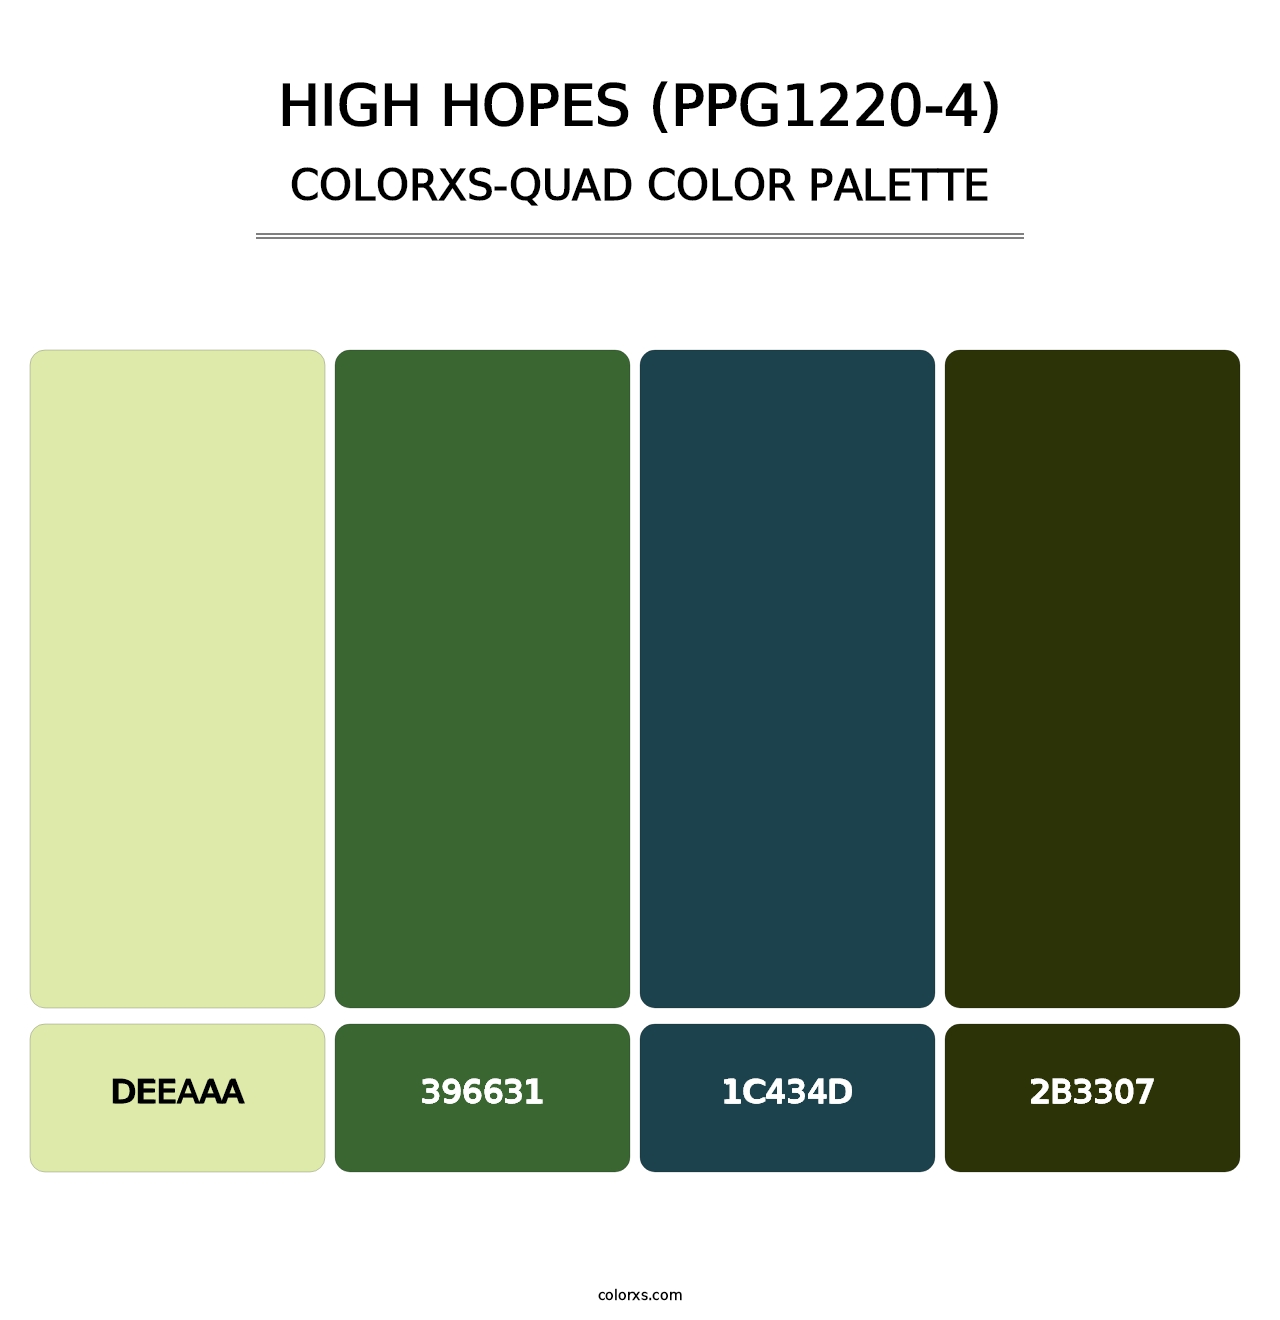 High Hopes (PPG1220-4) - Colorxs Quad Palette